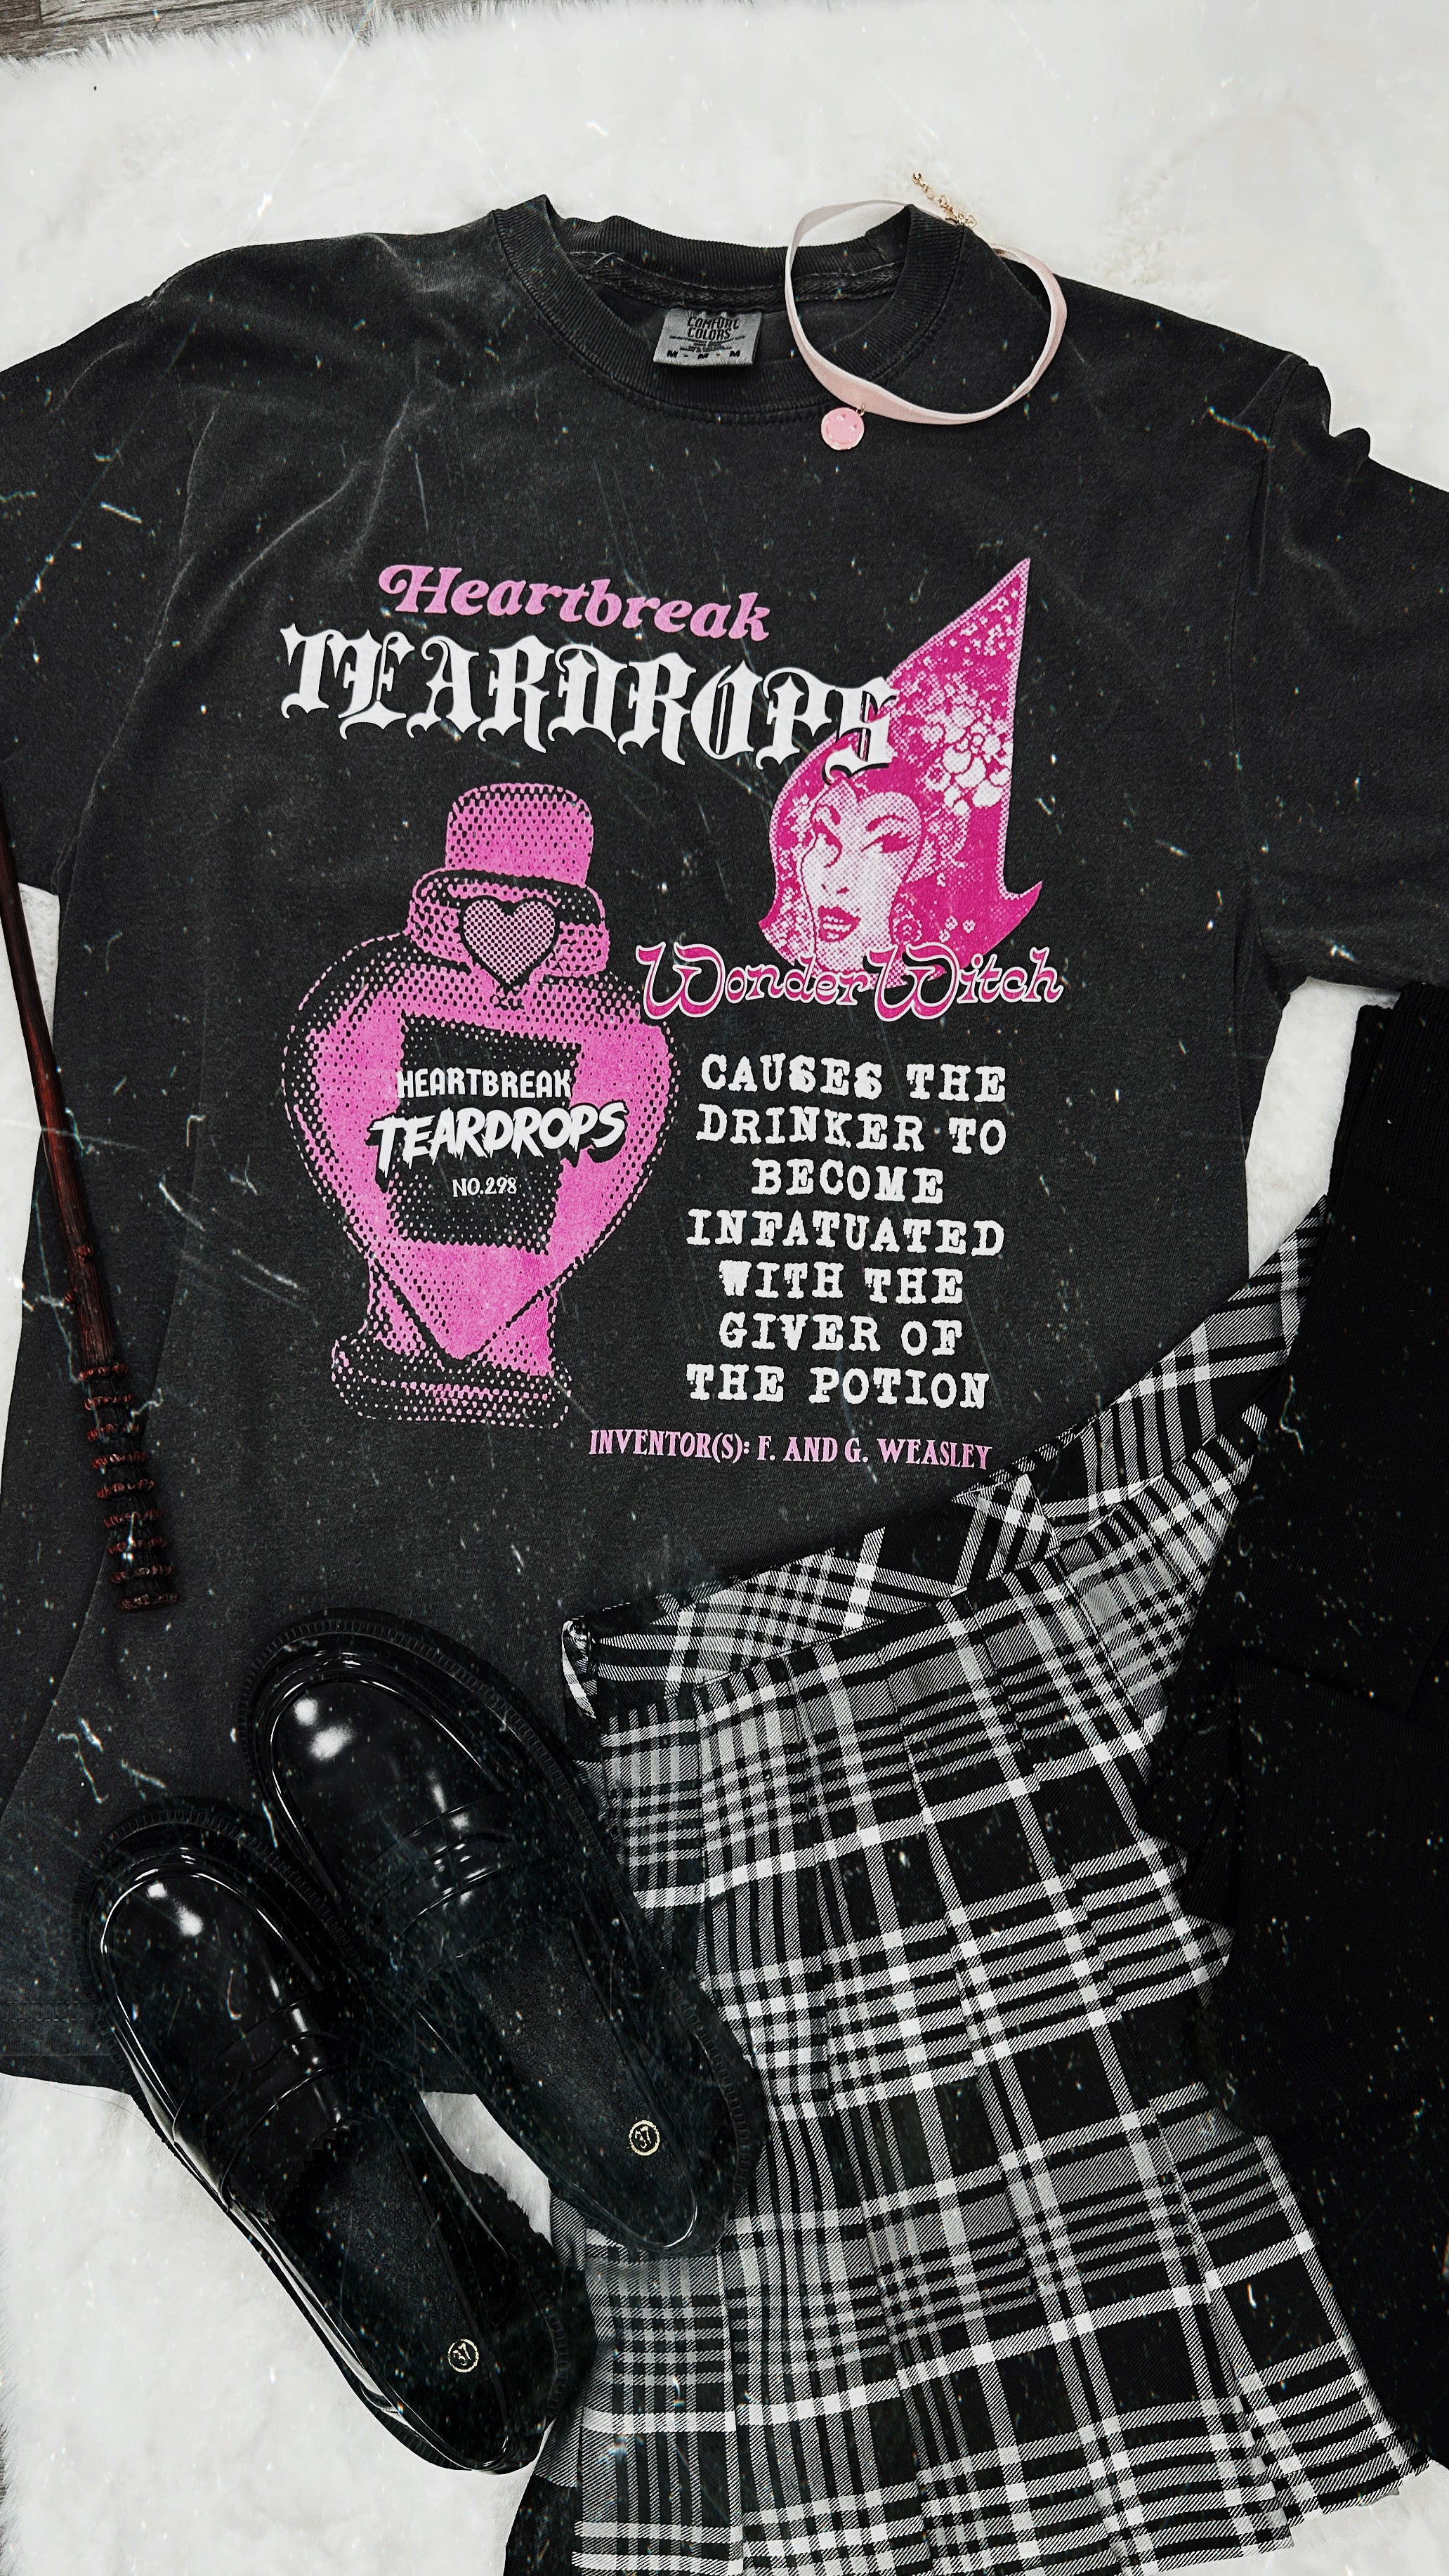 Heartbreak Tear Drop Garment Dyed Tee